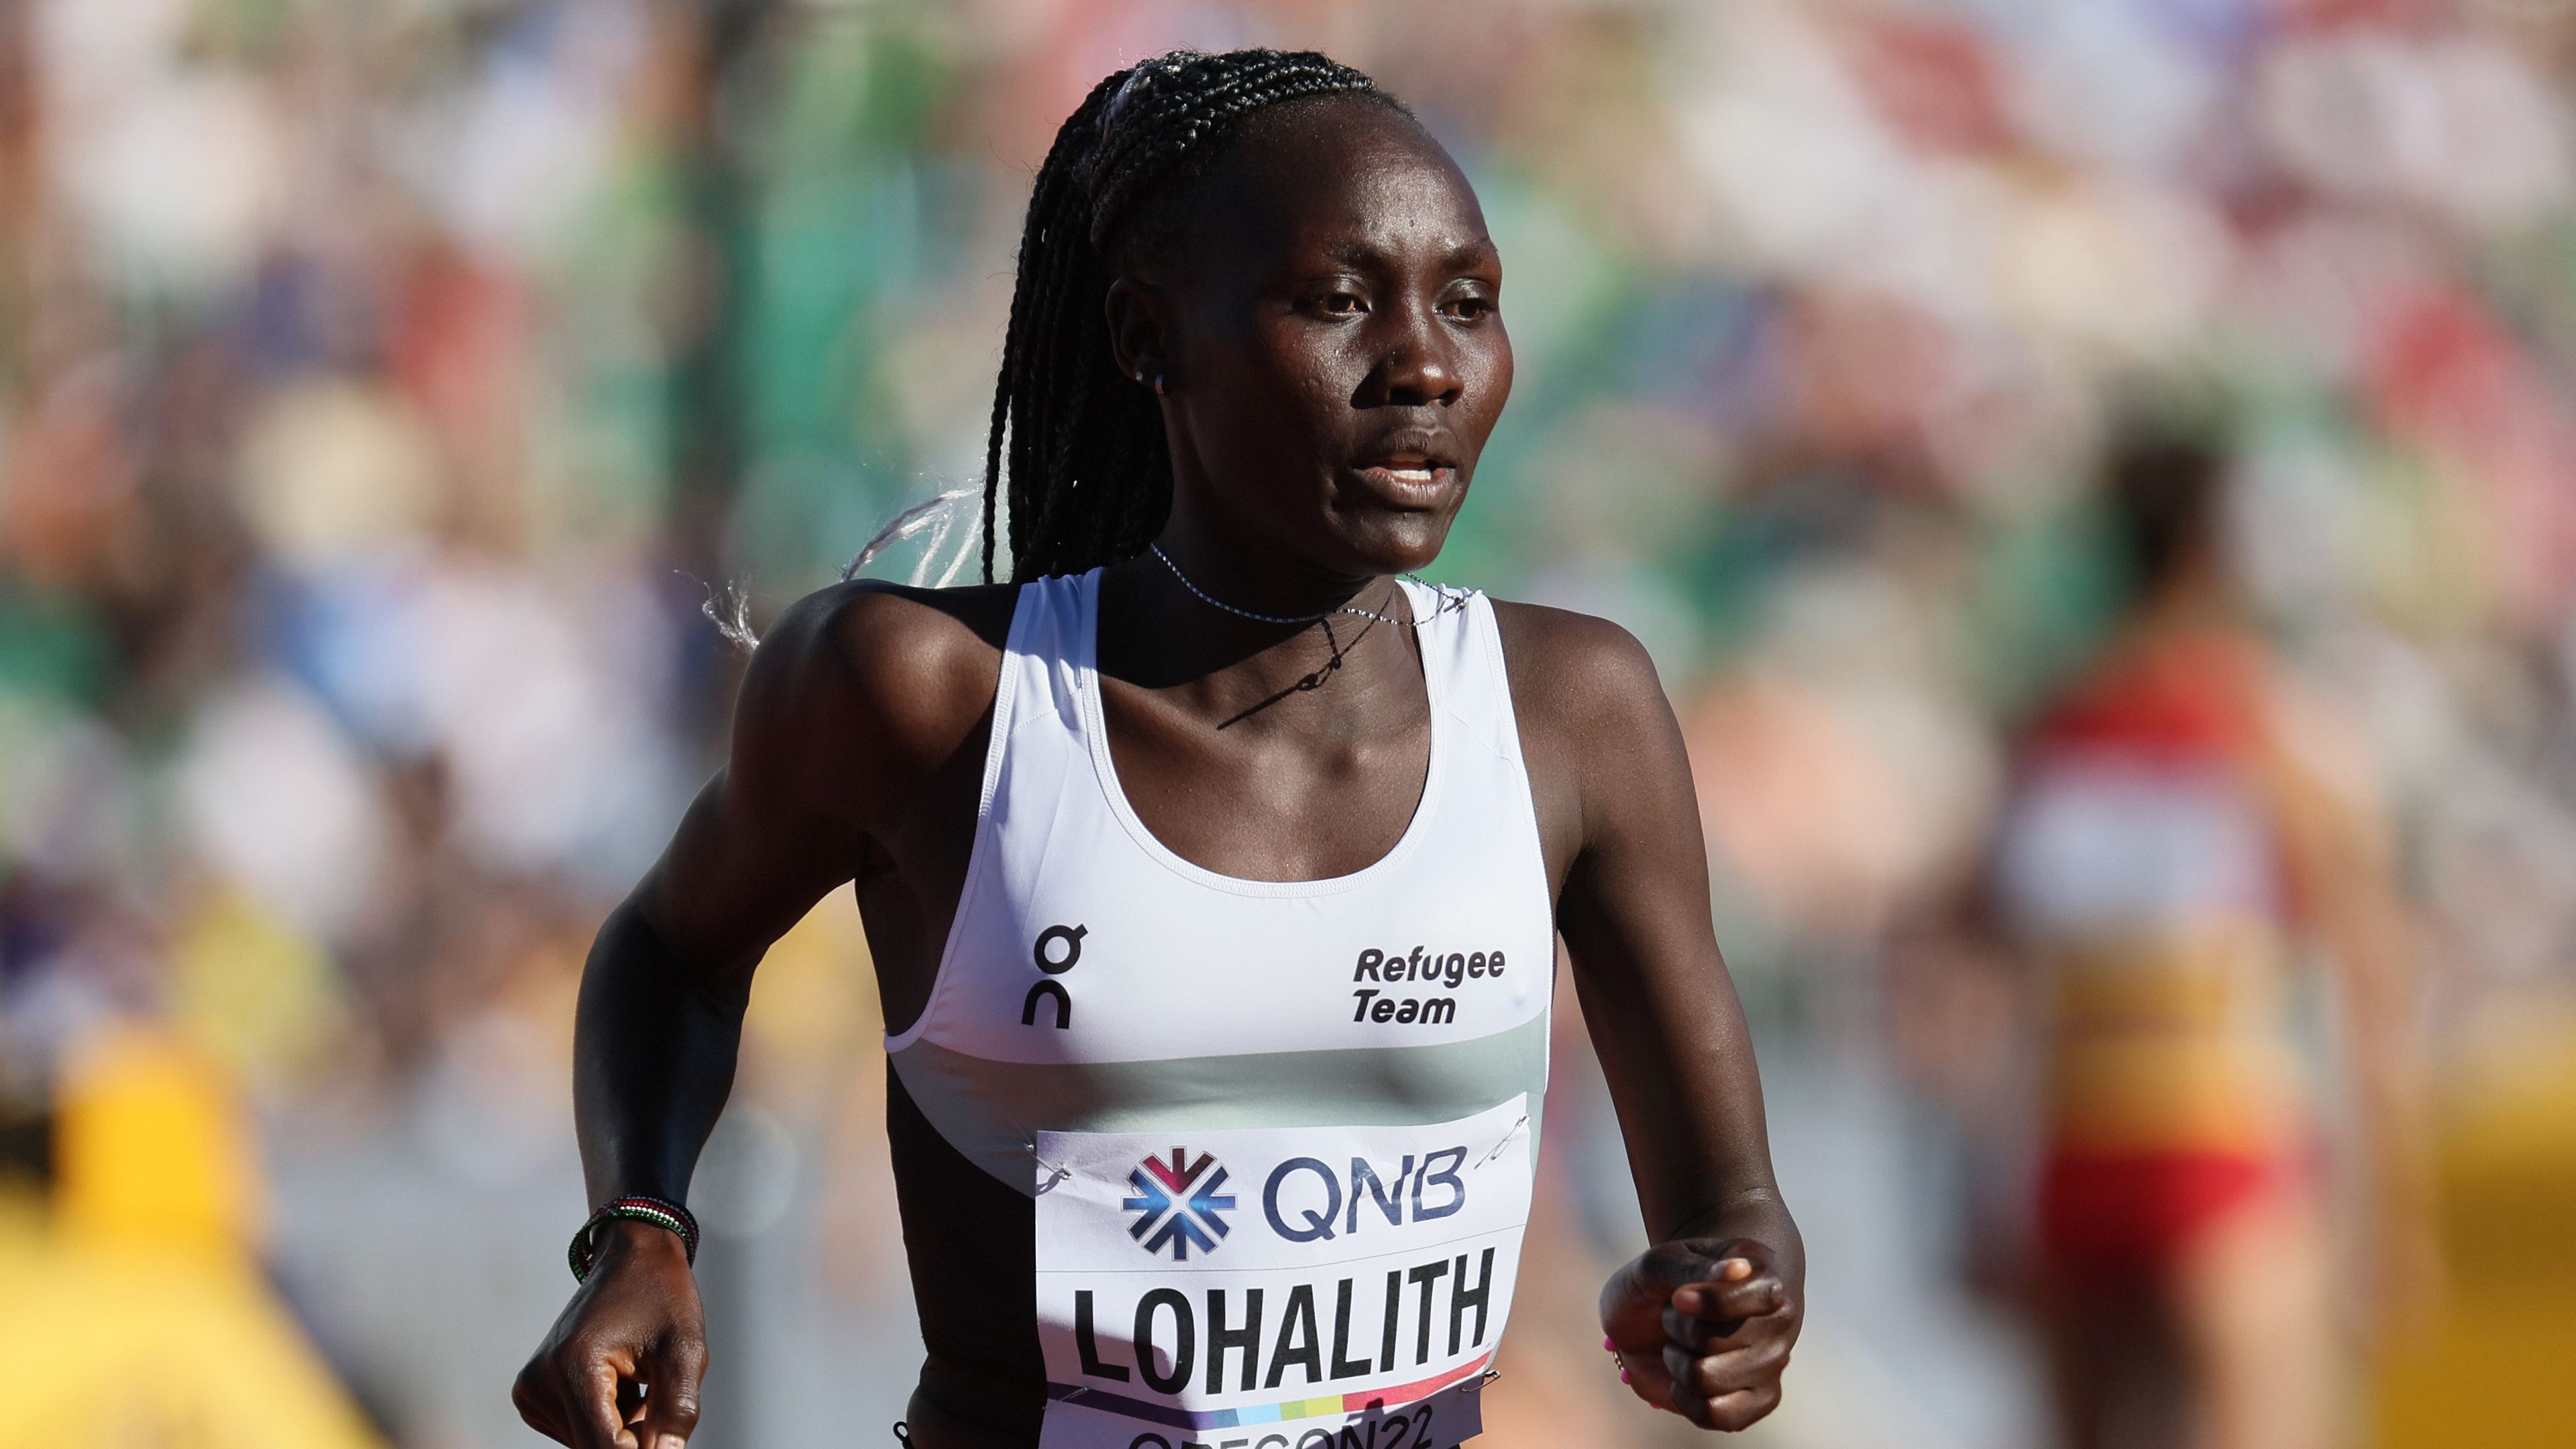 A dél-szudáni származású Anjelina Nadai Lohalith a hatfős menekült csapat legnevesebb versenyzője